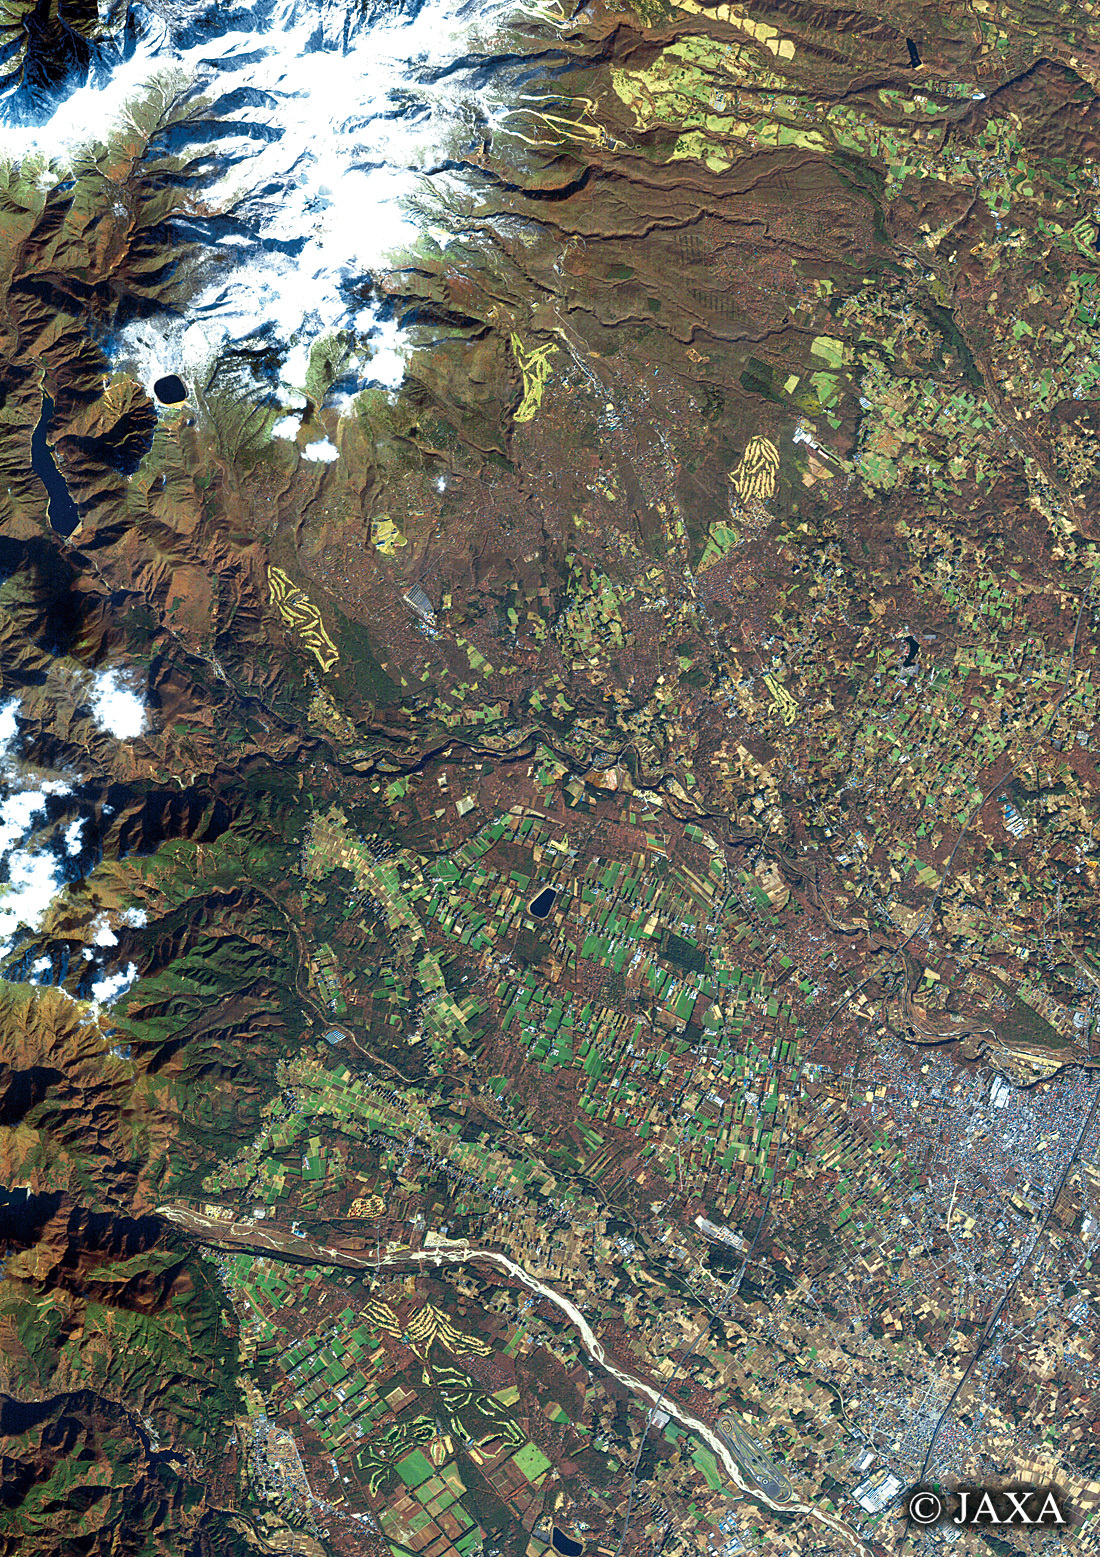 だいちから見た日本の都市 那須:衛星画像